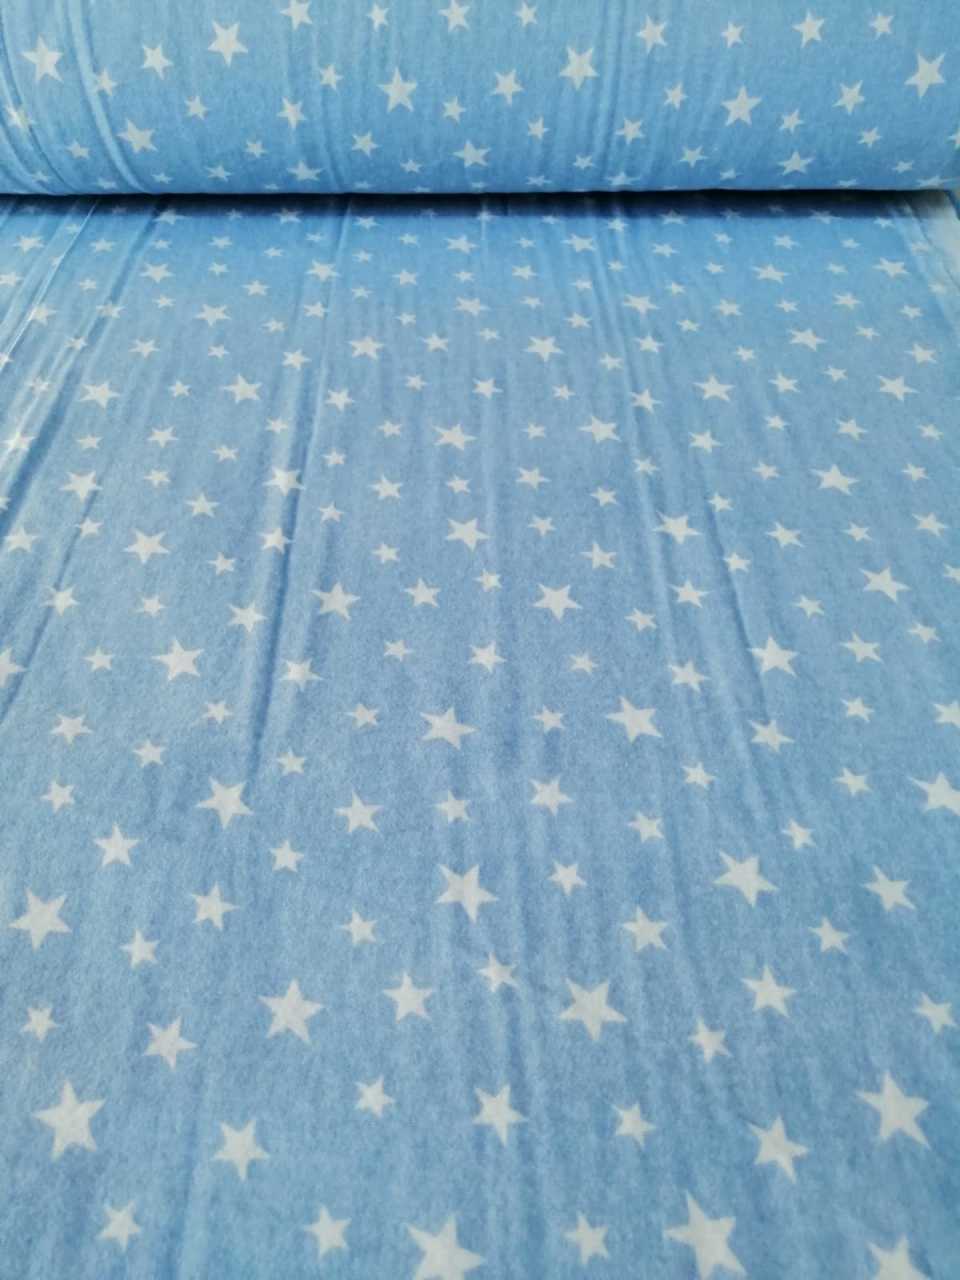 Küçük yıldızlar mavi pazen kumaş